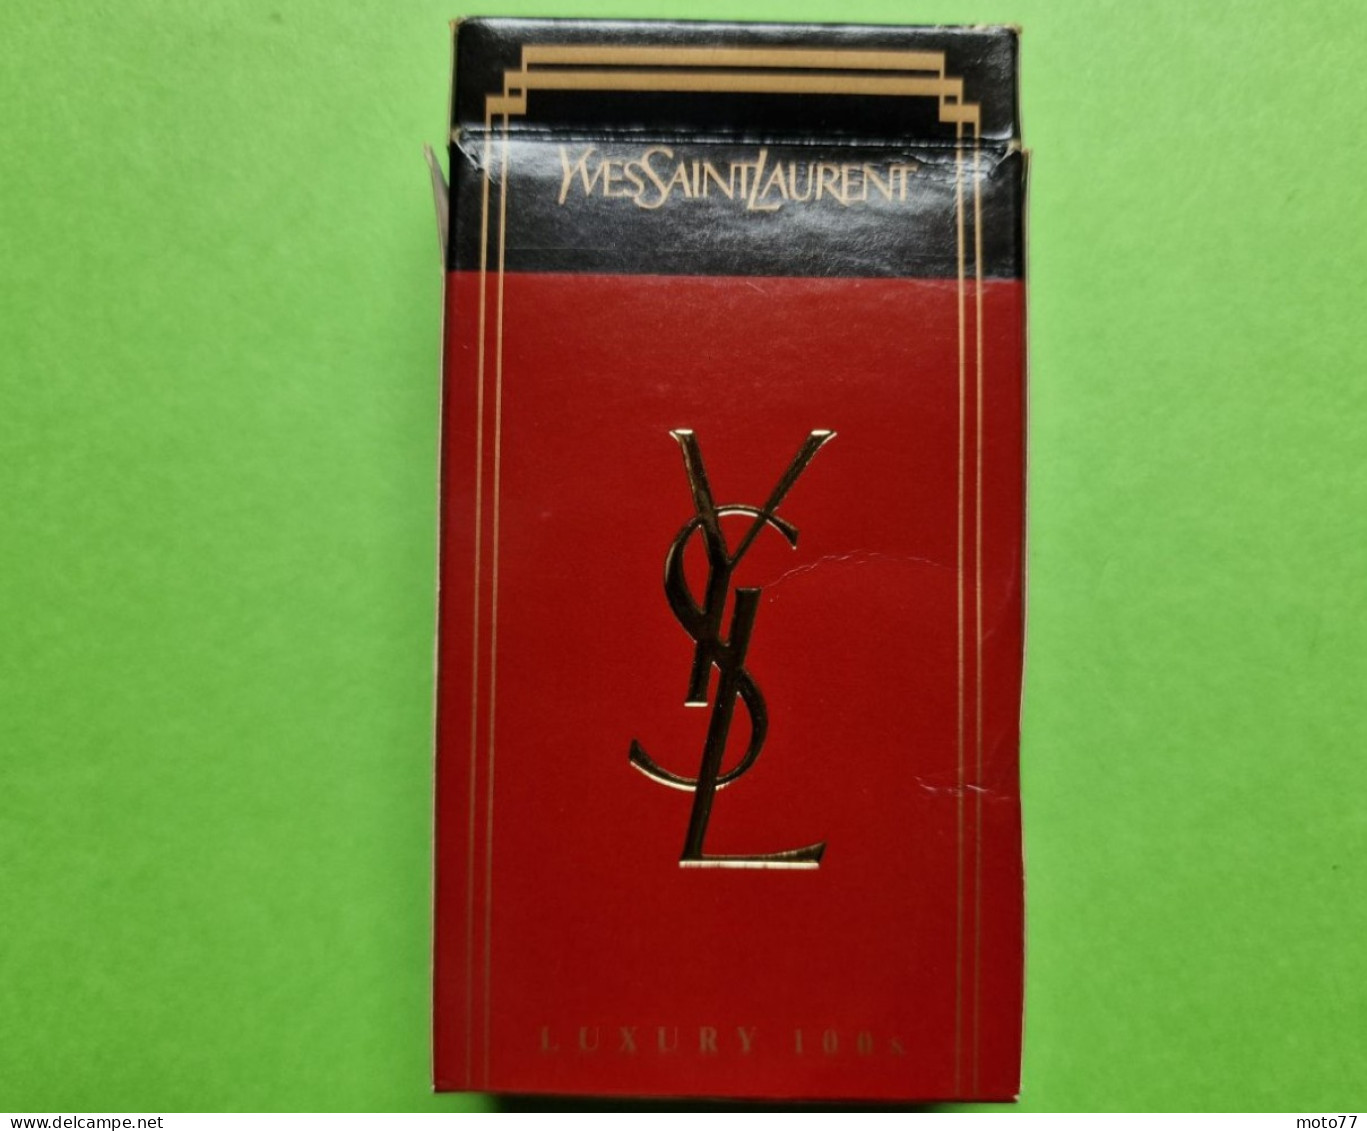 Ancien PAQUET De CIGARETTES Vide - YVES SAINT LAURENT - Vers 1980 - Estuches Para Cigarrillos (vacios)